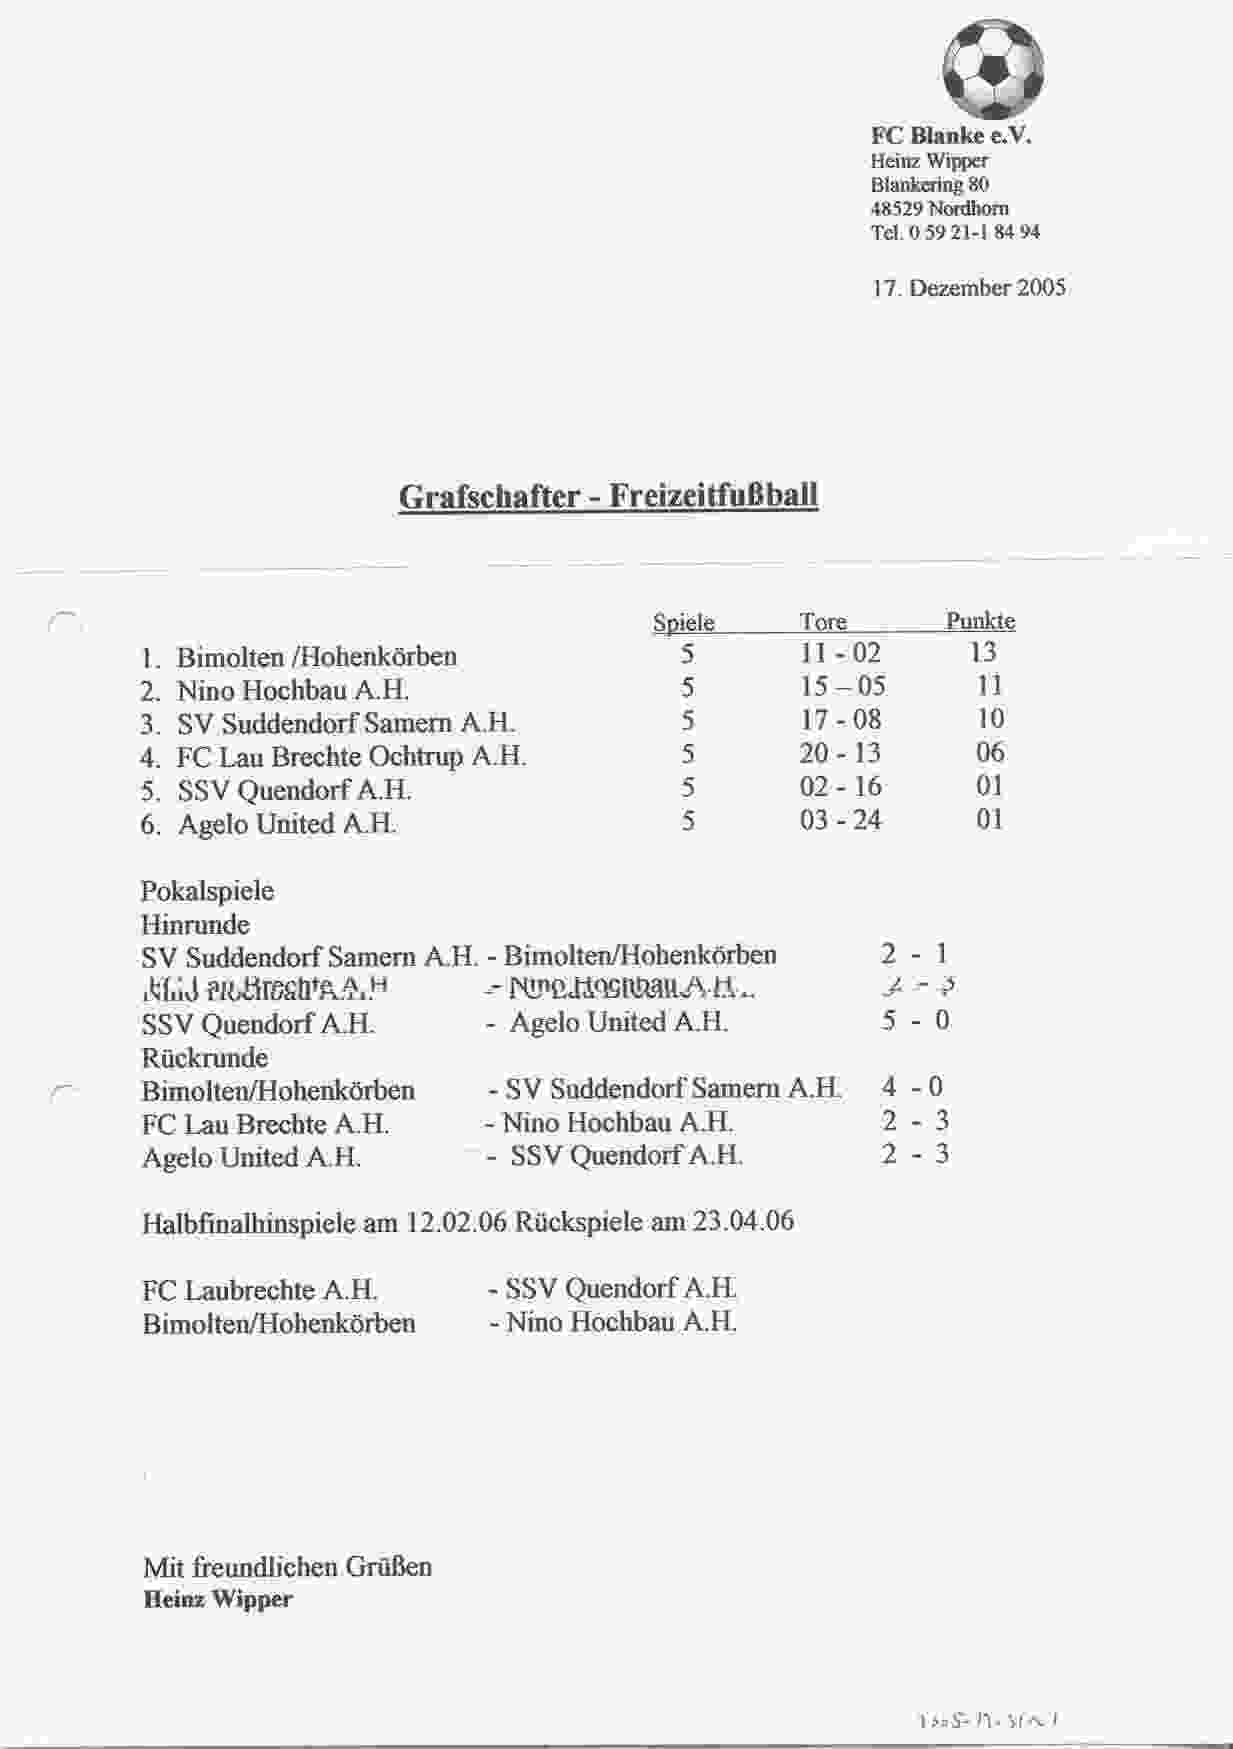 Tussenstand Grafschafter Freizeit Fuβball Meisterschaft seizoen 2005/2006